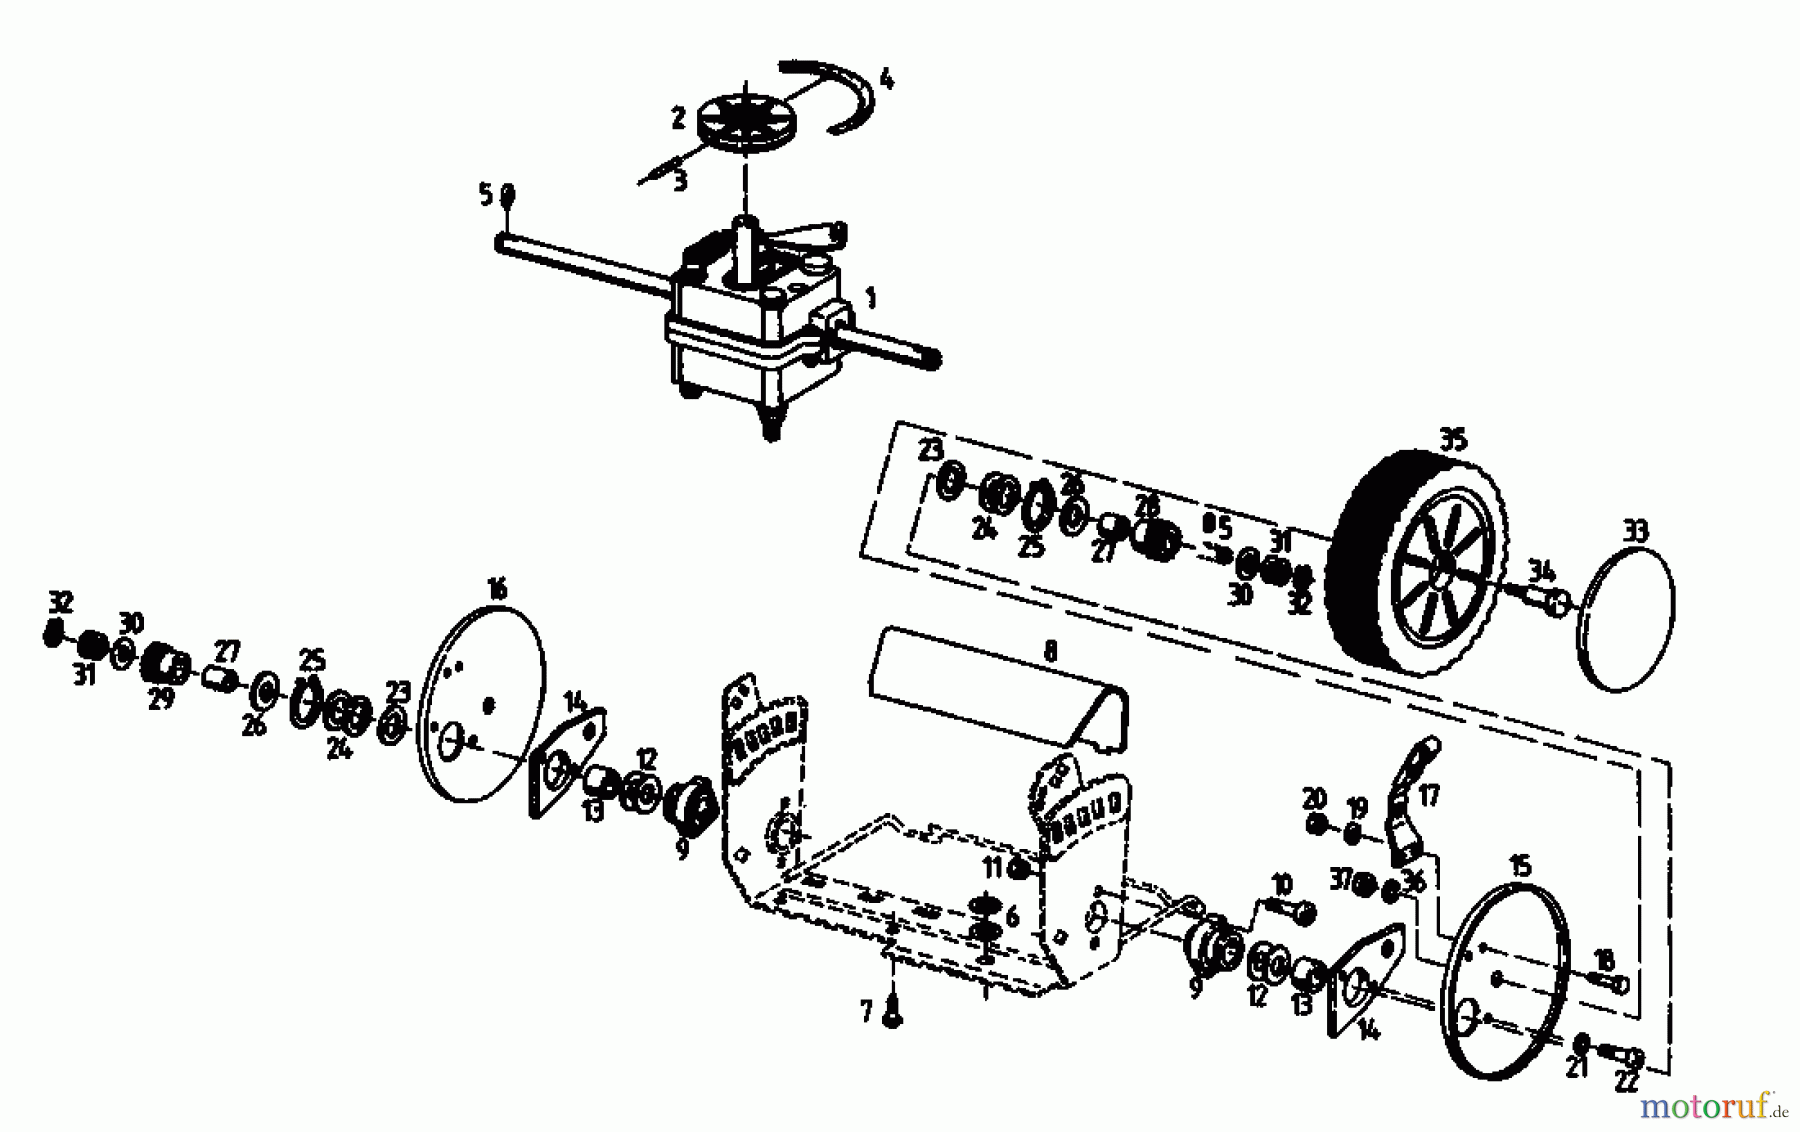  Kmg Motormäher mit Antrieb KMG 46 BA 04025.02  (1994) Getriebe, Räder, Schnitthöhenverstellung